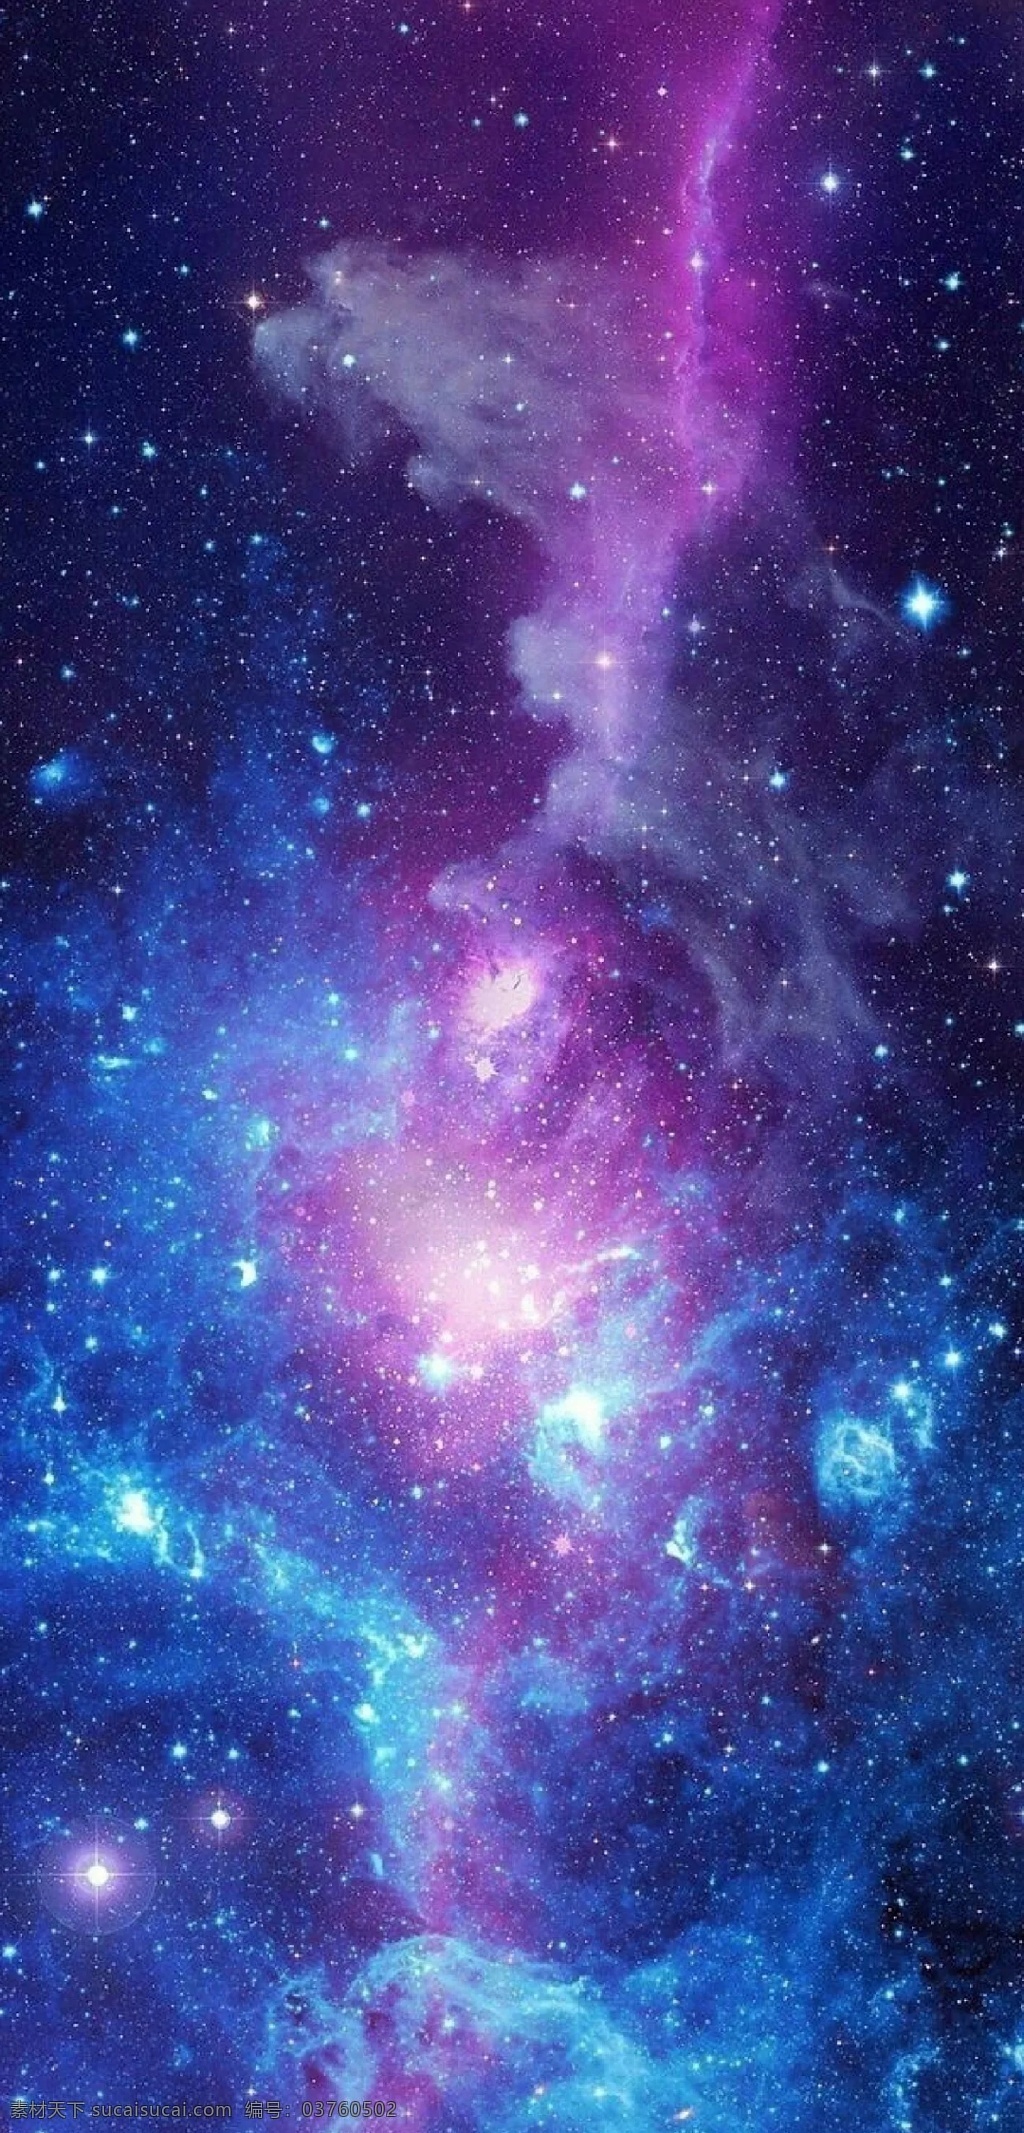 紫蓝星雾 星雾 手机高清桌布 星空 宇宙 星星 银河 星系 星河 星云 亮体 亮光 本星系群 天文 宇宙星系 浩瀚 星团 滤光 云雾 天体 星体 恒星 光圈 光环 星耀 手机 高清 桌布